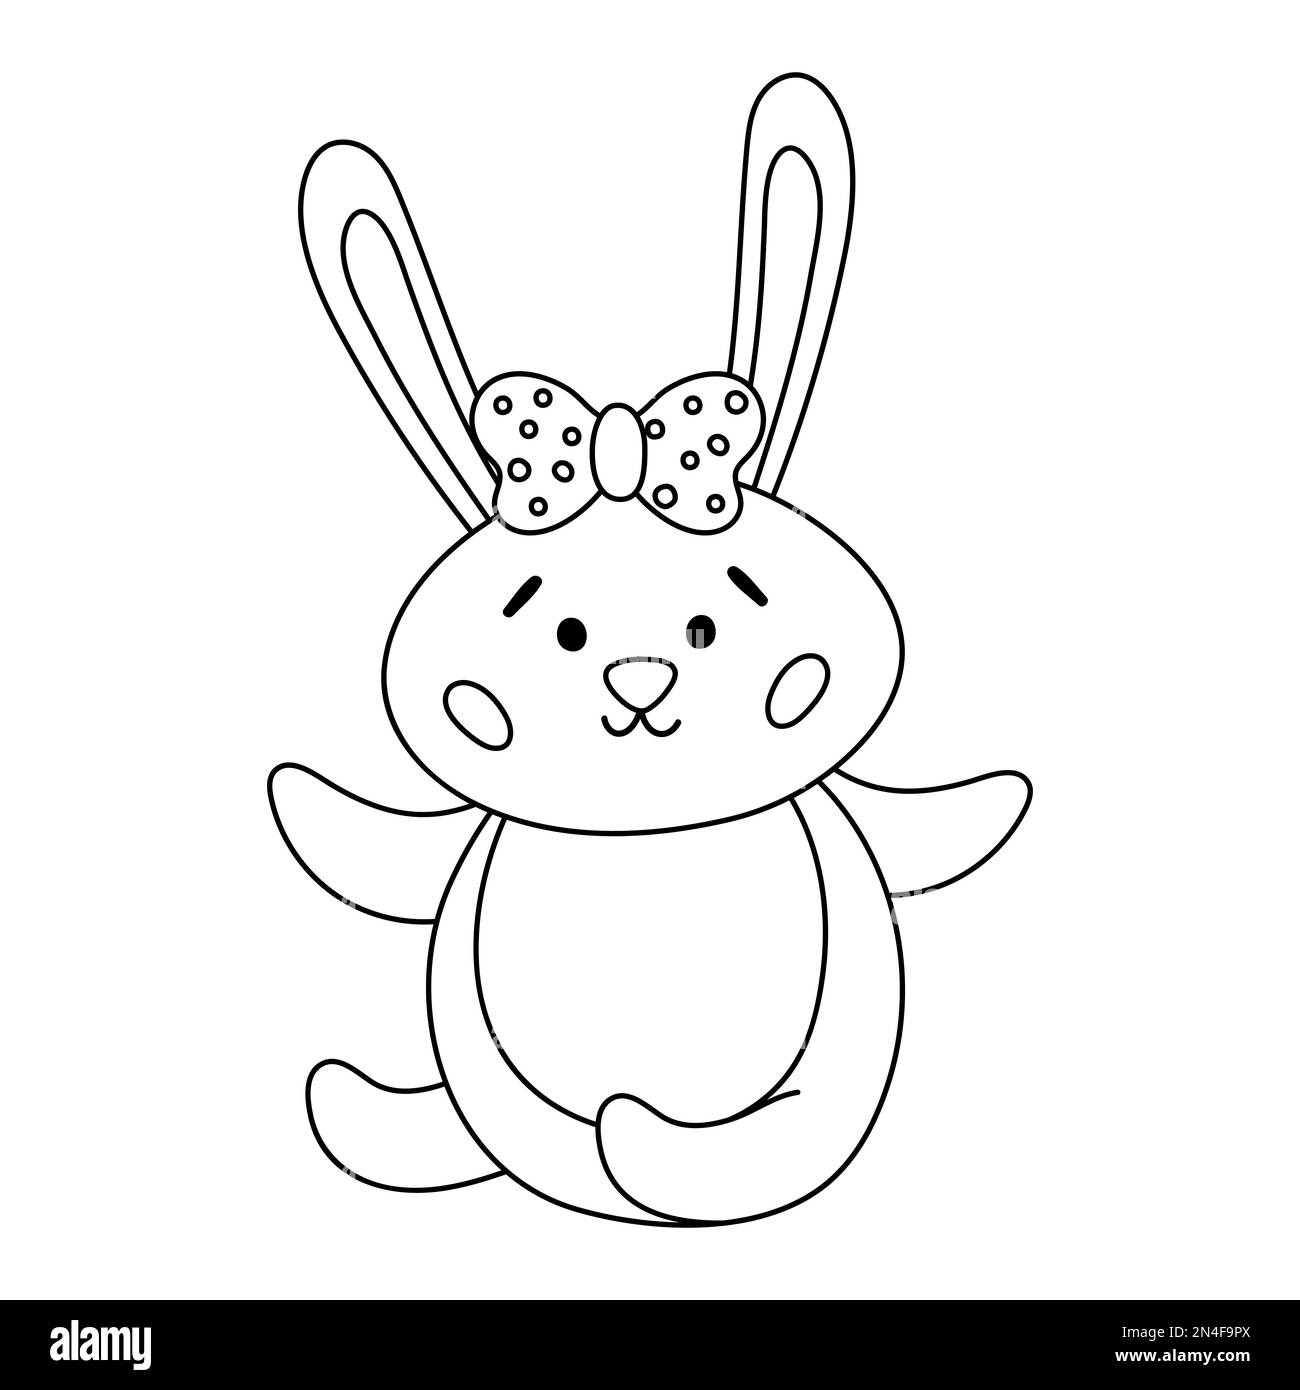 Vector schwarz-weißes Osterhasen-Symbol. Kontur sitzender Hase mit Hörbogen. Süße niedliche Tierzeichnung für Kinder. Lustiges Frühlingshasenbild Stock Vektor